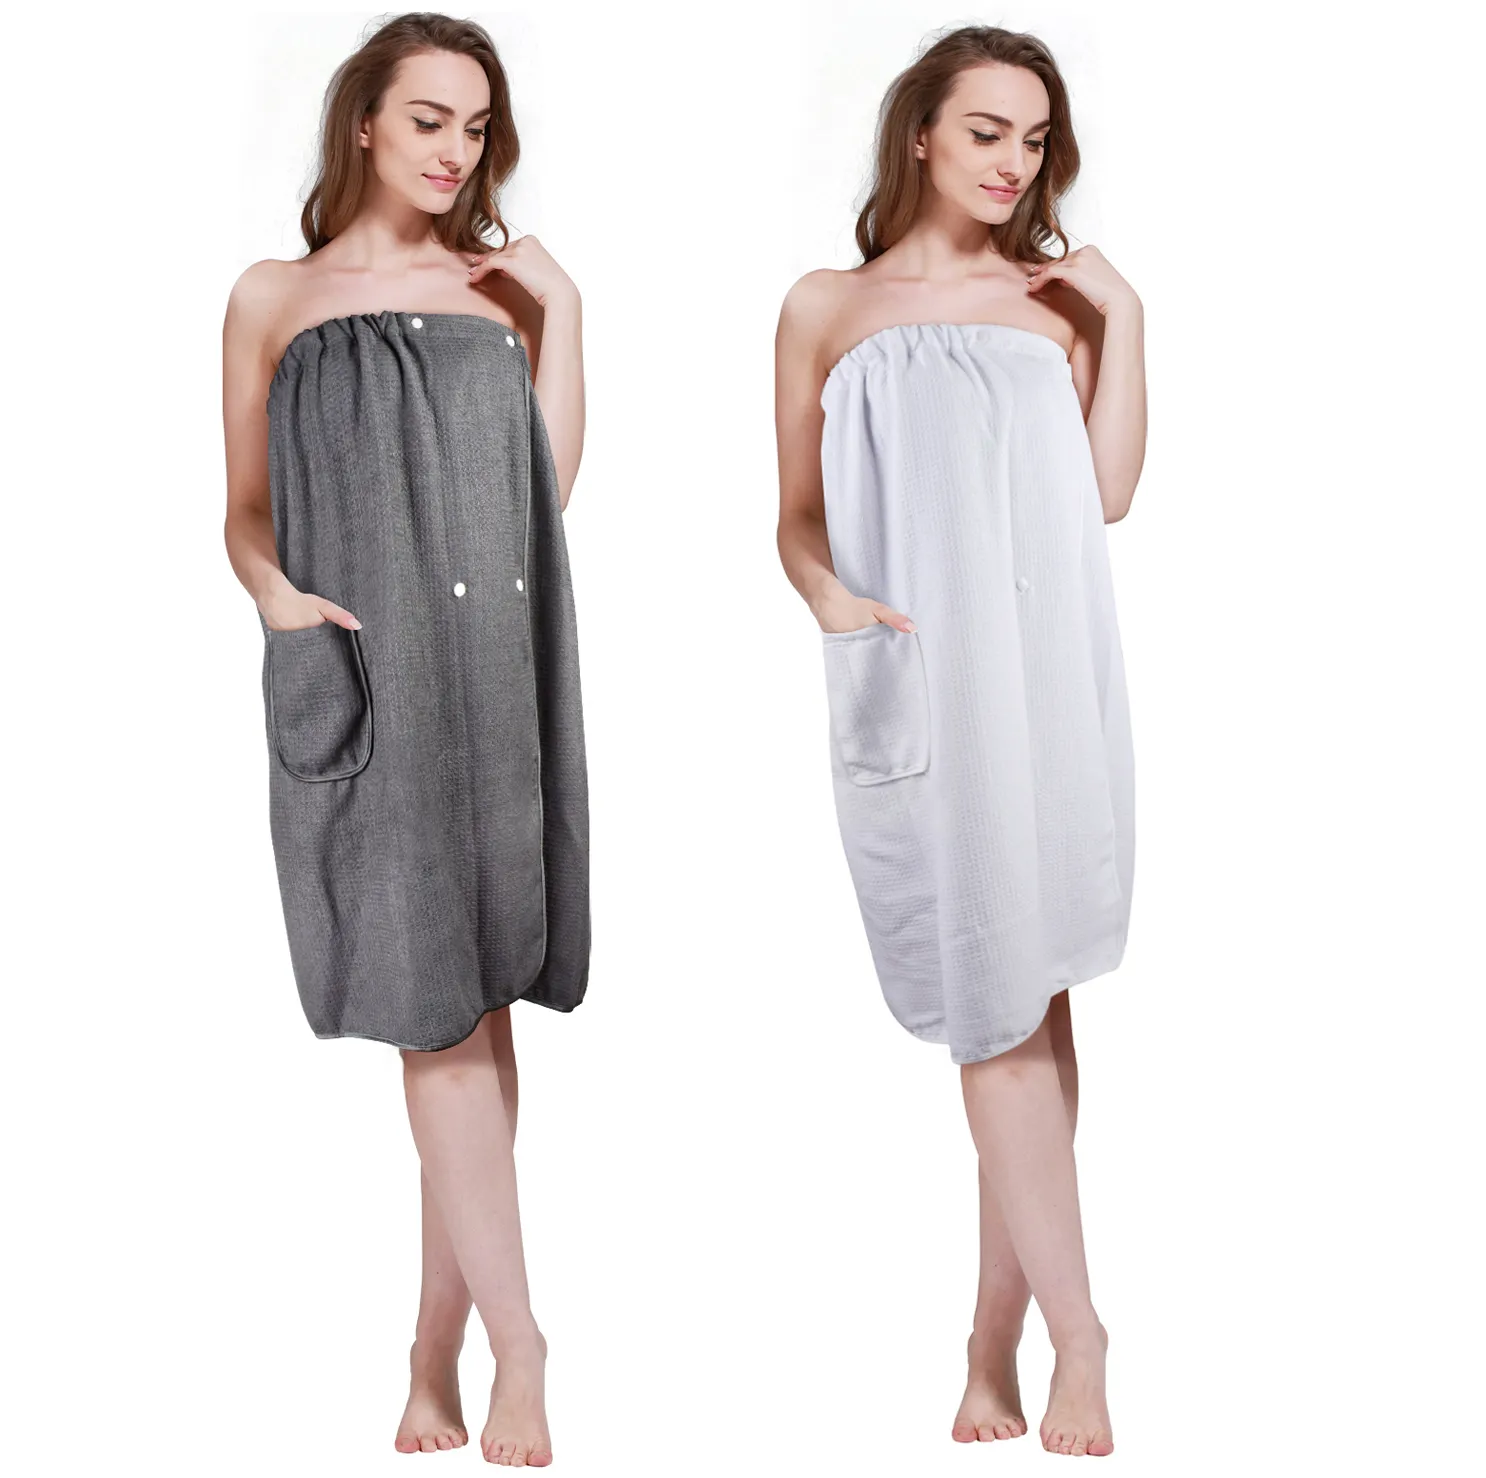 סיטונאי אמבטיה מגבת חצאית מותאם אישית לוגו 100% מיקרופייבר סופר סופג טרי ספא גוף ופל אמבטיה לעטוף מגבת לנשים